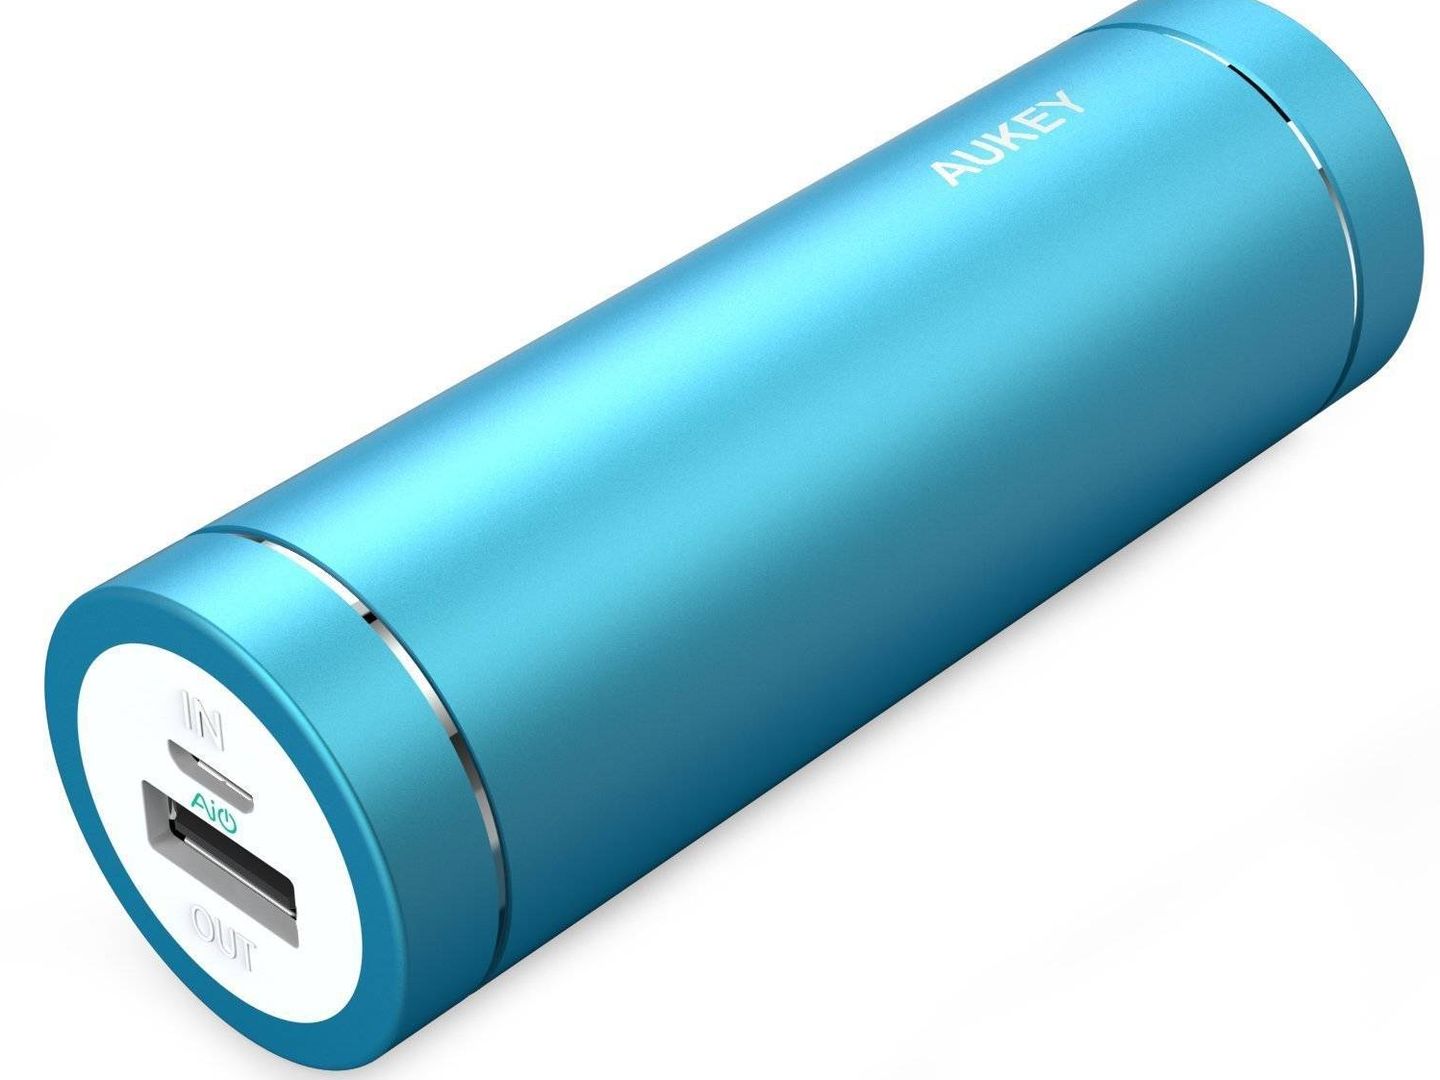 Las baterías externas son bellas y útiles a la vez (Amazon)